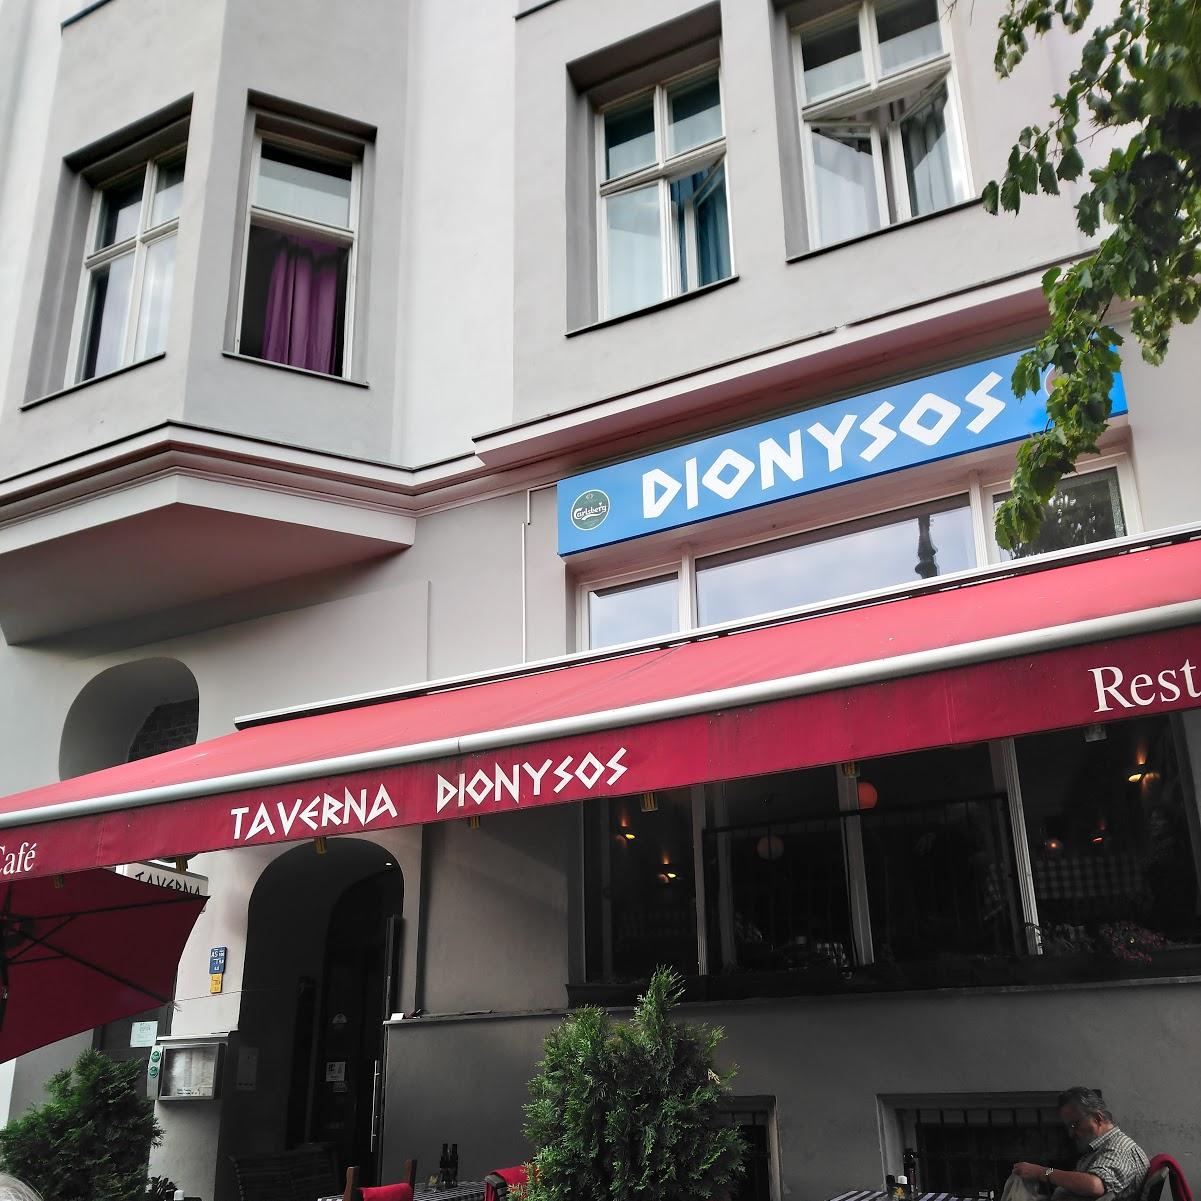 Restaurant "Taverna Dionysos" in Berlin